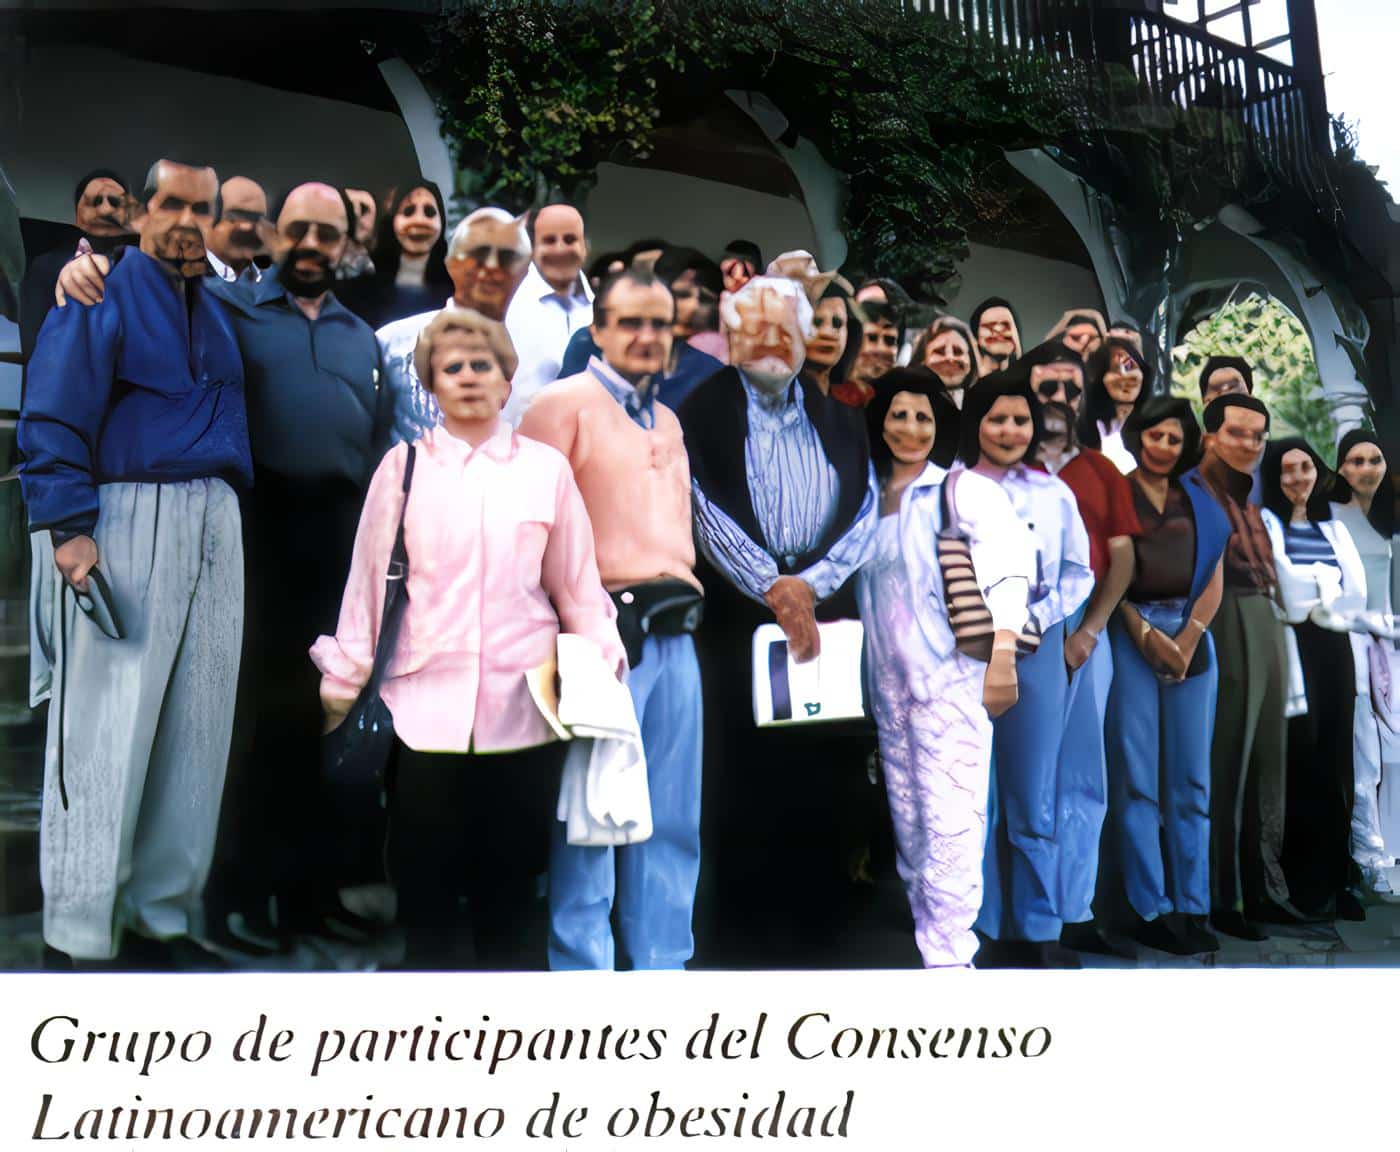 Grupo consenso Latinoamericano de obesidad